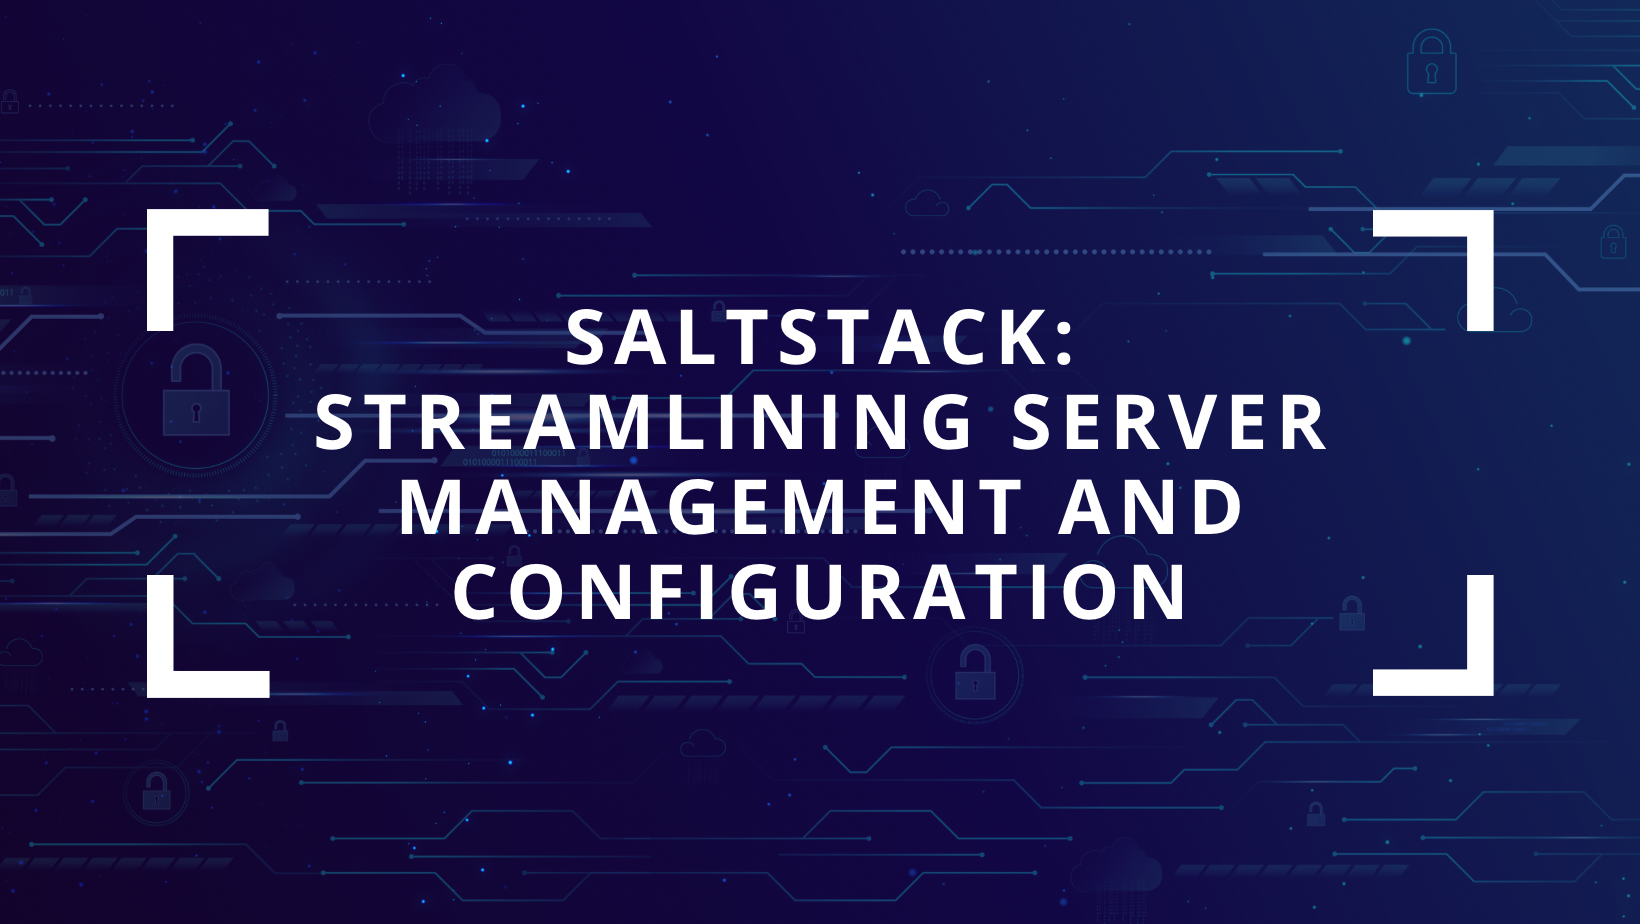 SaltStack (Salt): Streamlining Server Management and Configuration